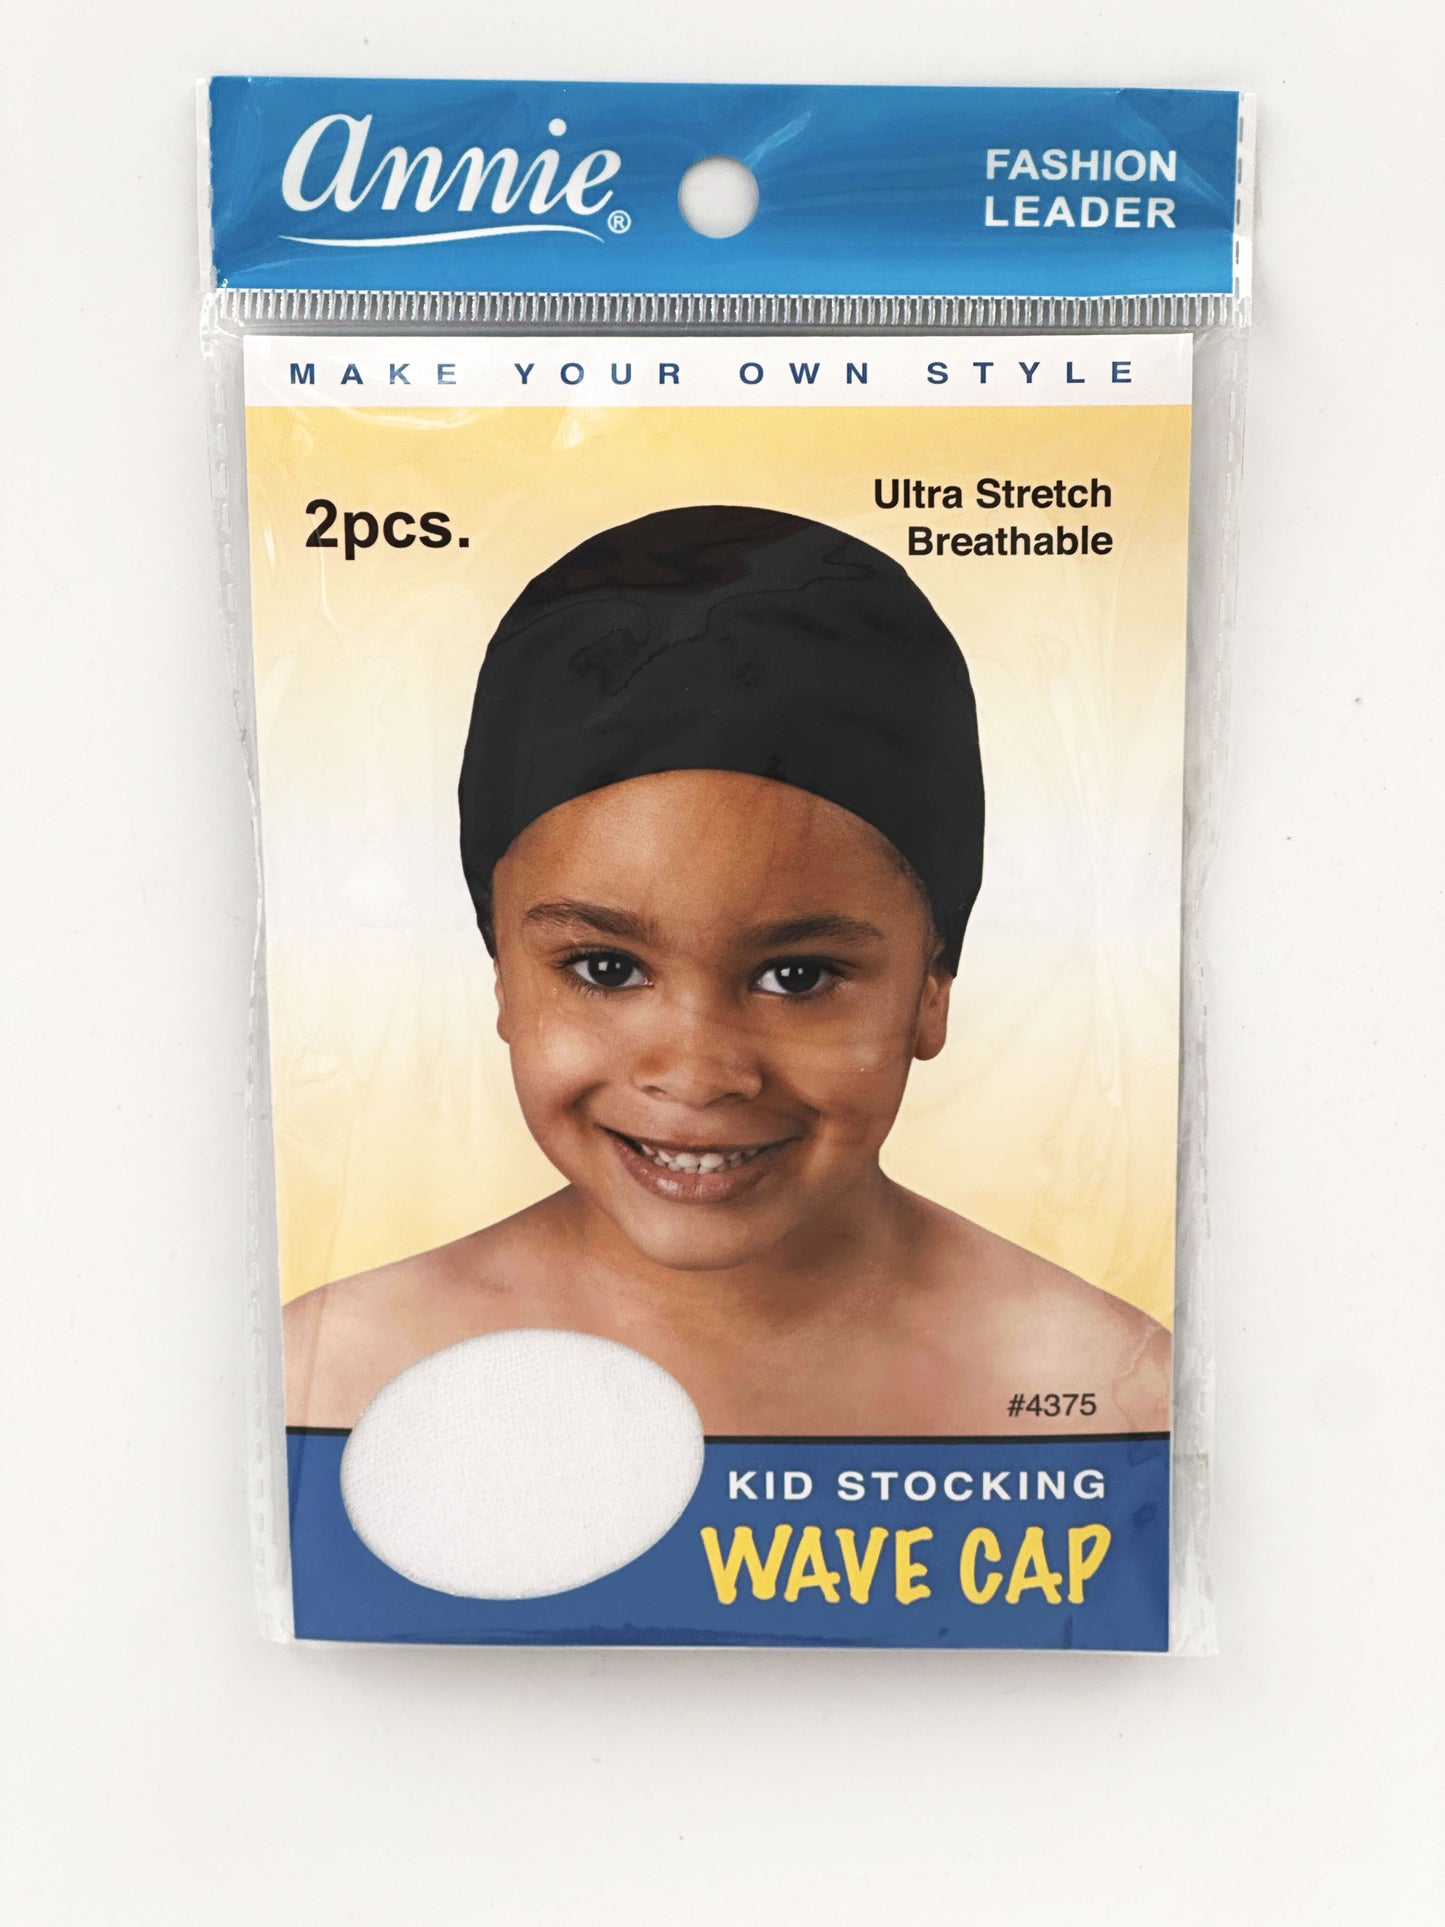 Annie 2 Piece Kids Stocking Wave Cap Assorted #4375